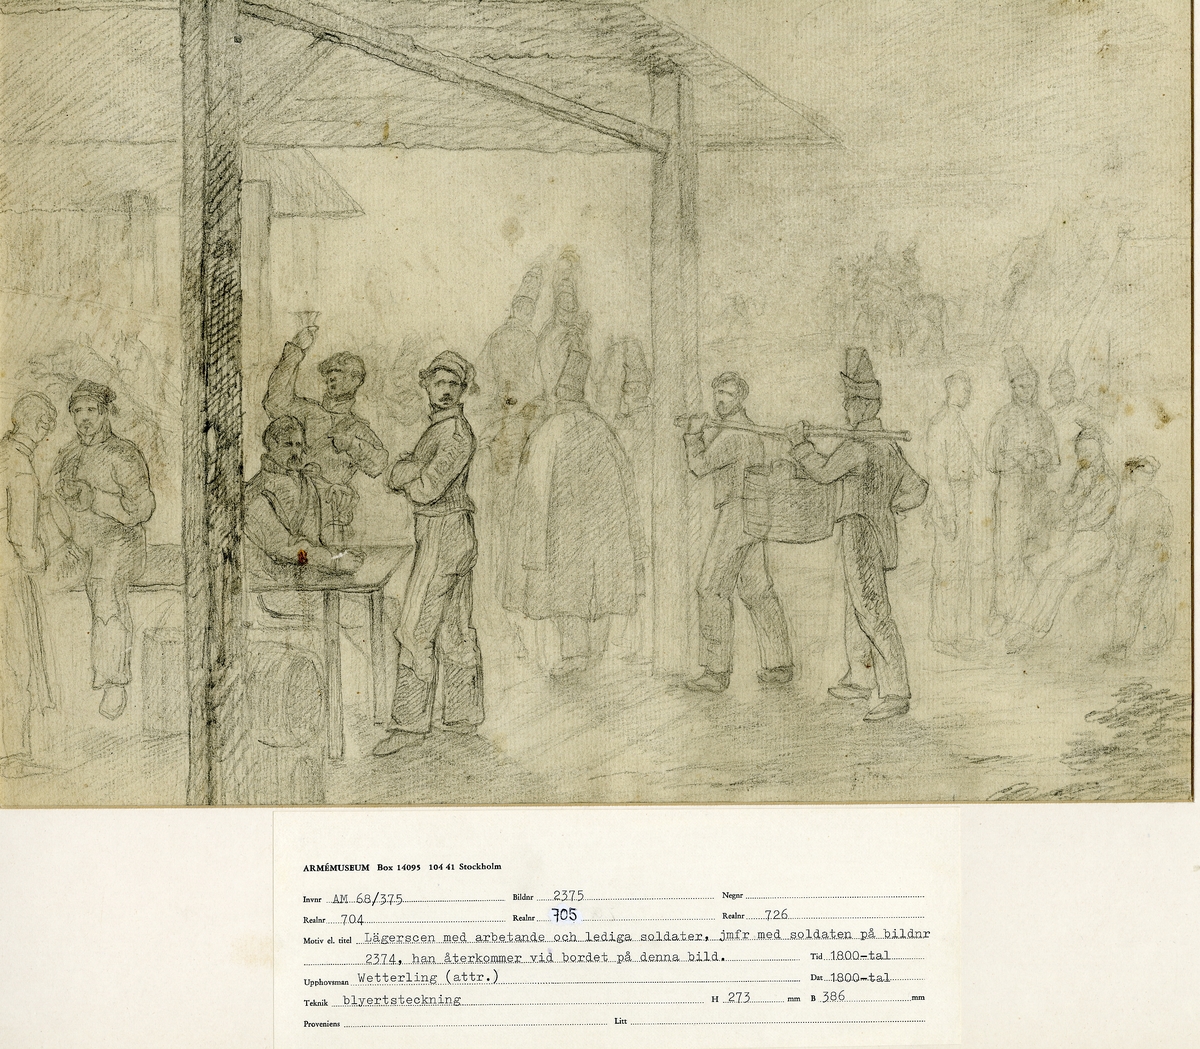 Grupp M I.
Teckning föreställande markententeri, lägerscen med arbetande & lediga soldater, attribuerad till konstnären Alexander Clemens Wetterling (1796-1858).